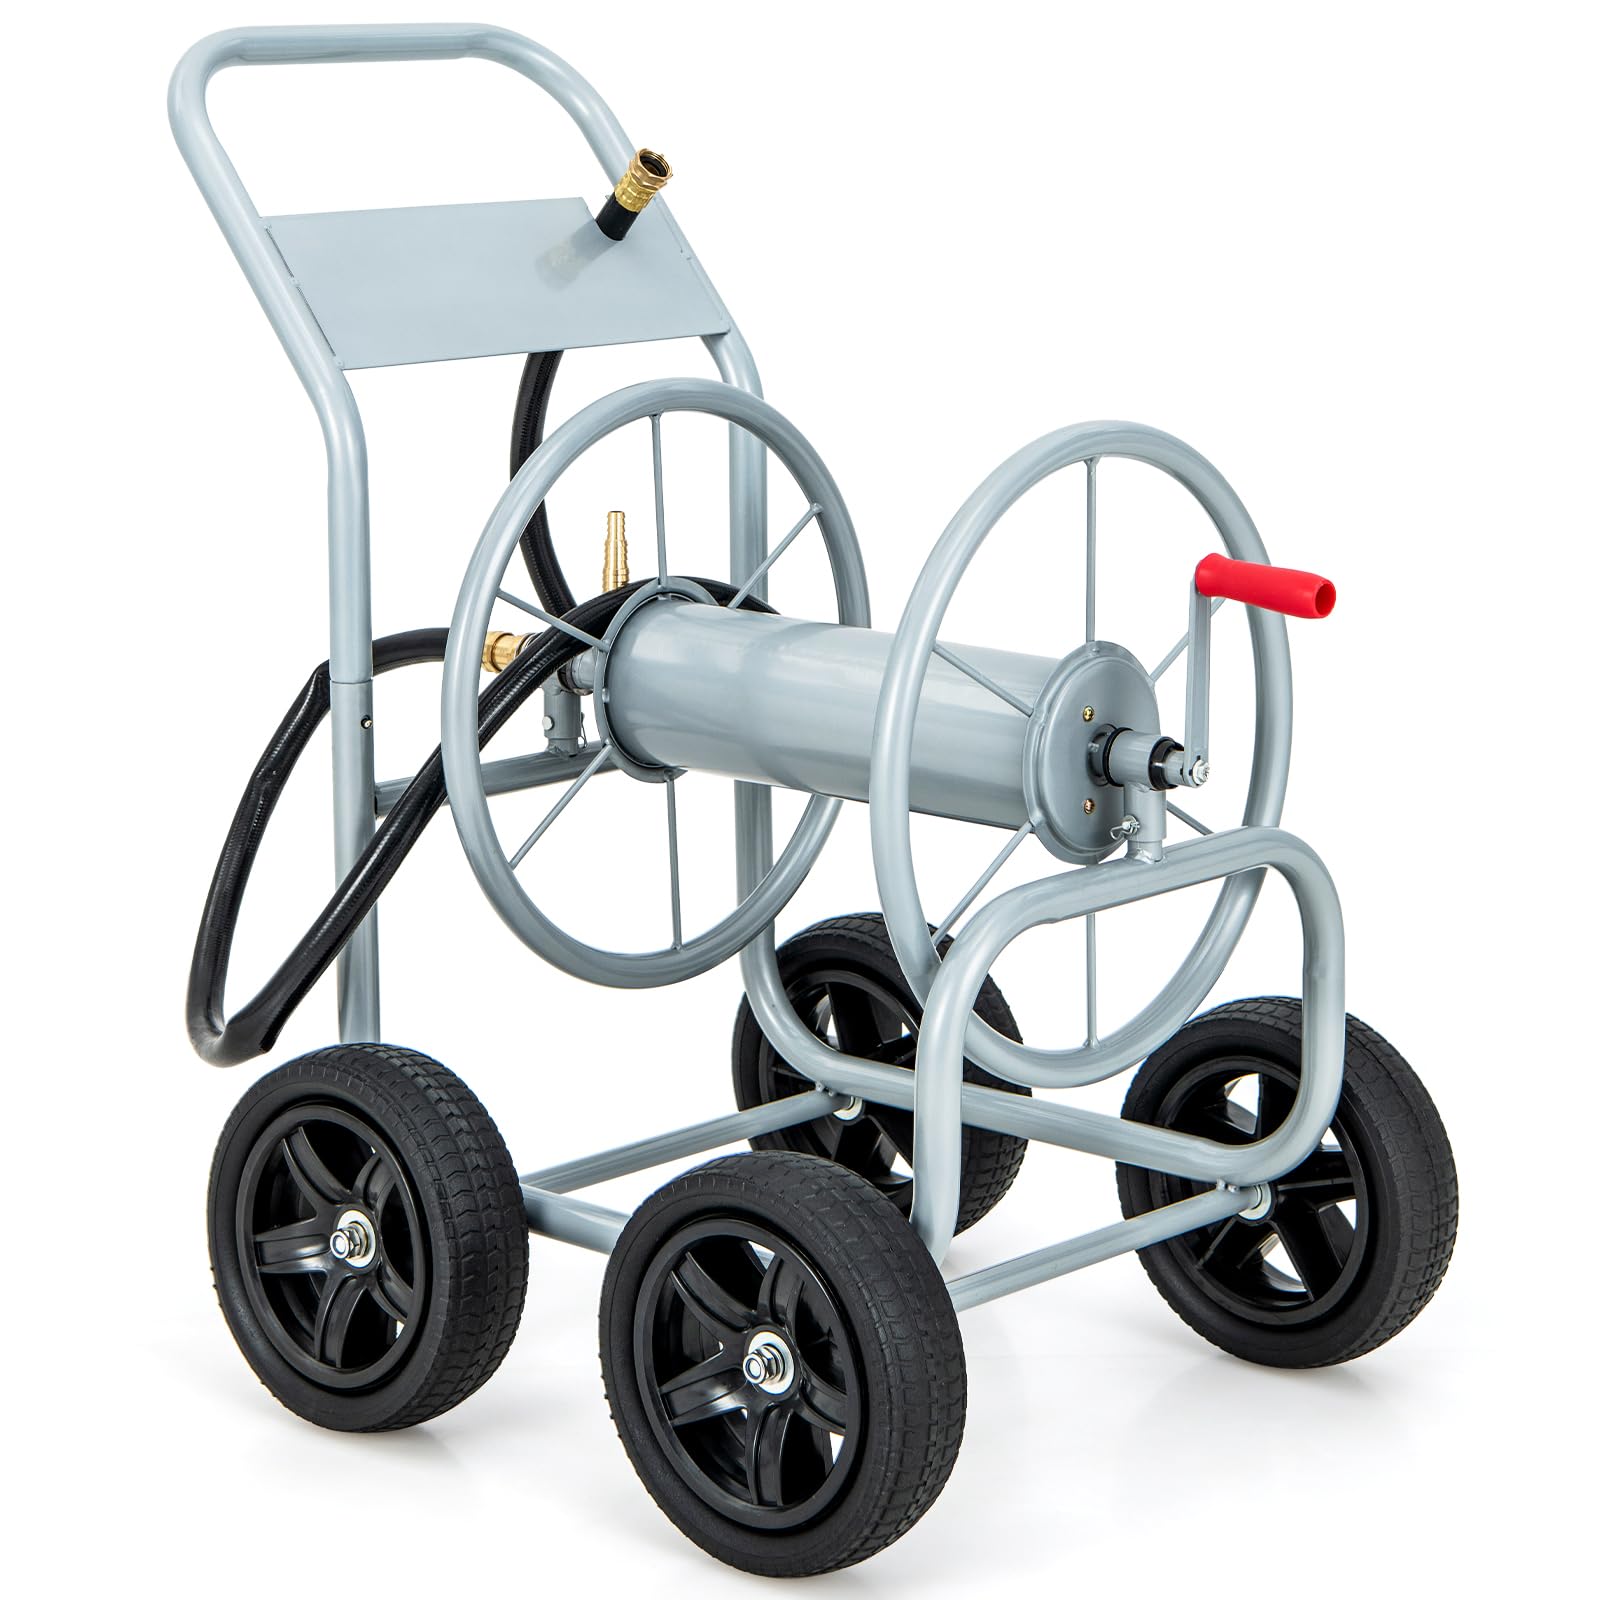 Giantex Garden Hose Reel Cart - Water Hose Cart with 4 Wheels & Non-Slip Grip, Grey